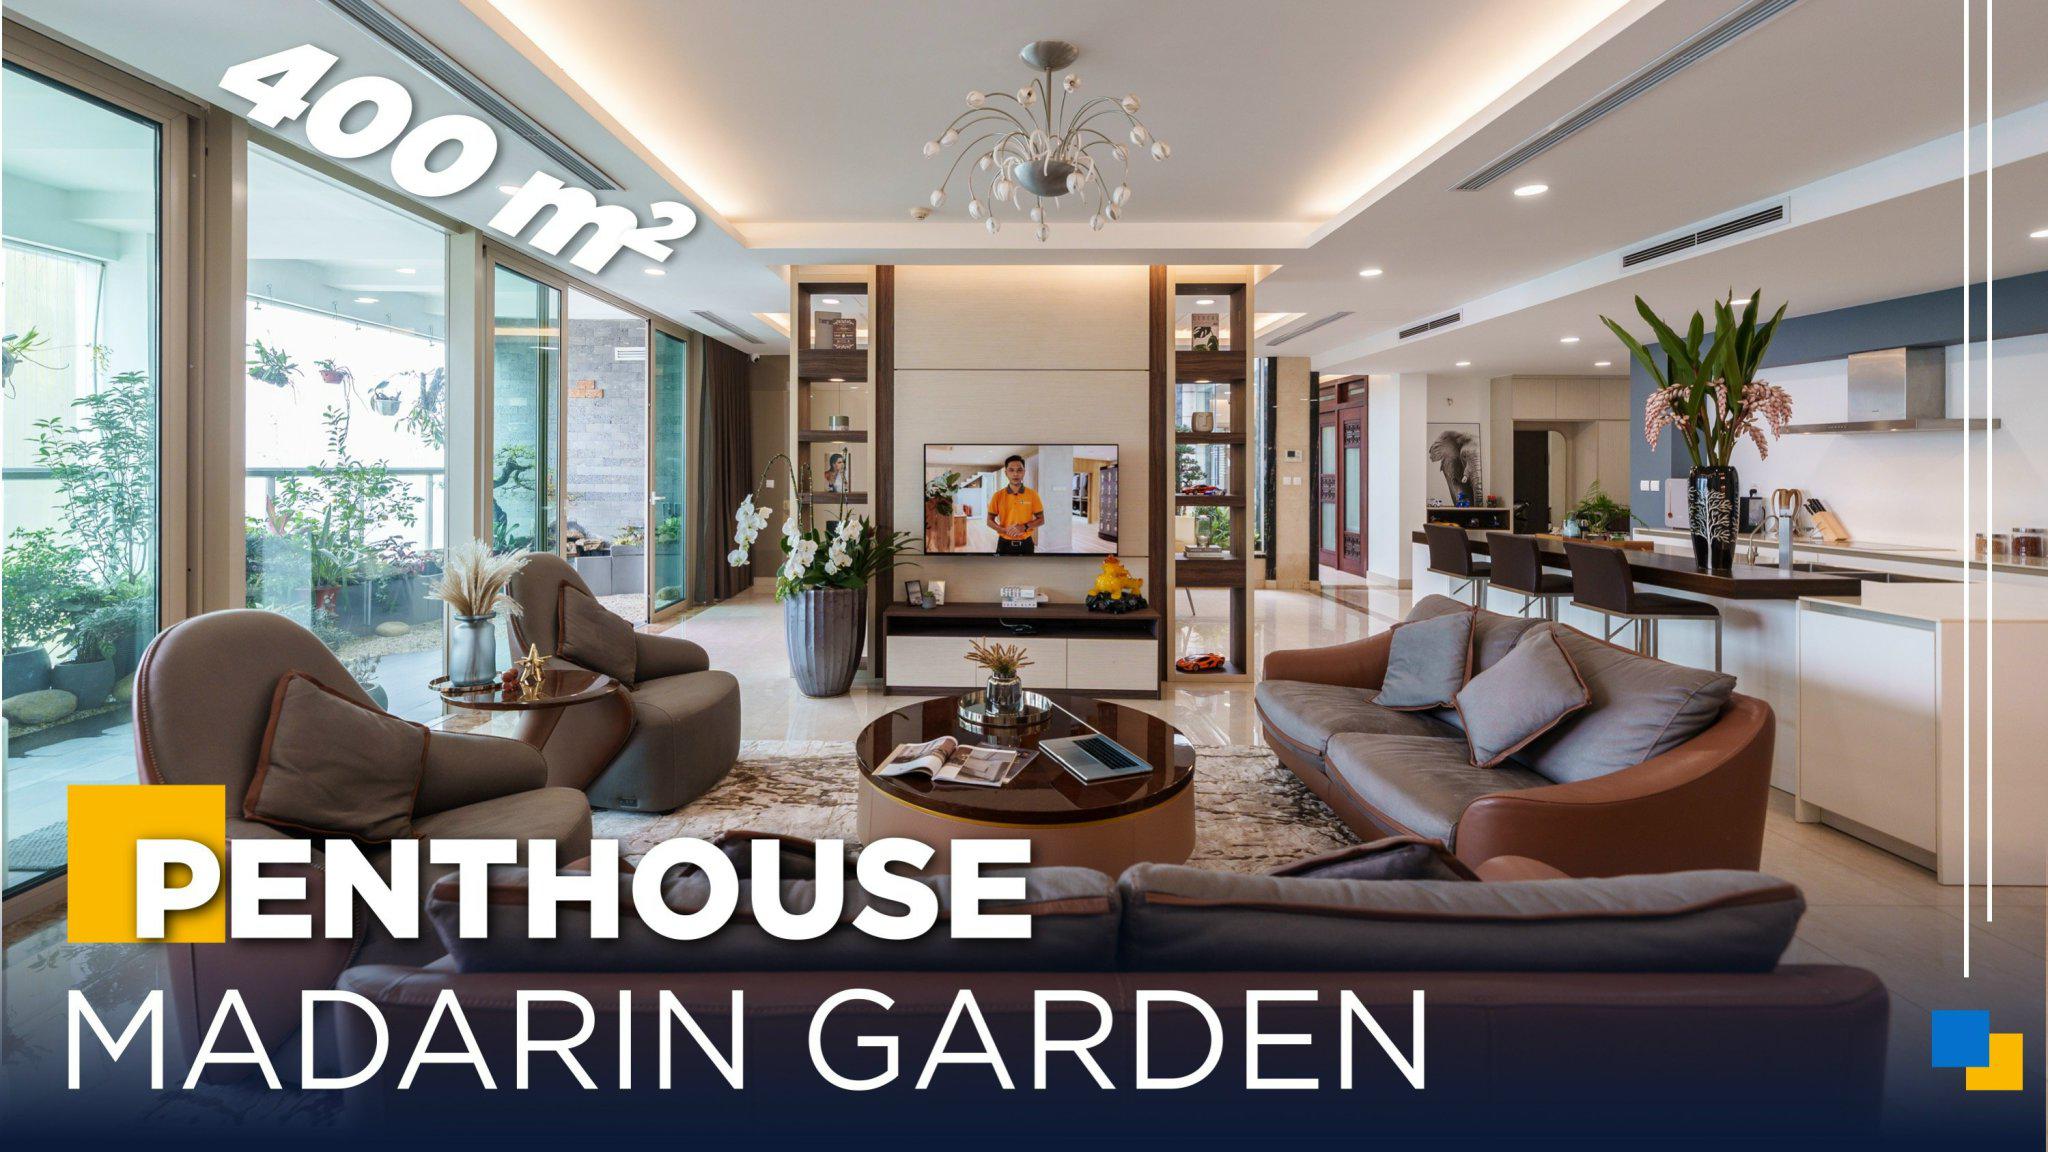 Penthouse 400m2 Madarin Garden Super Class | An Cuong Wood x Furniture 399